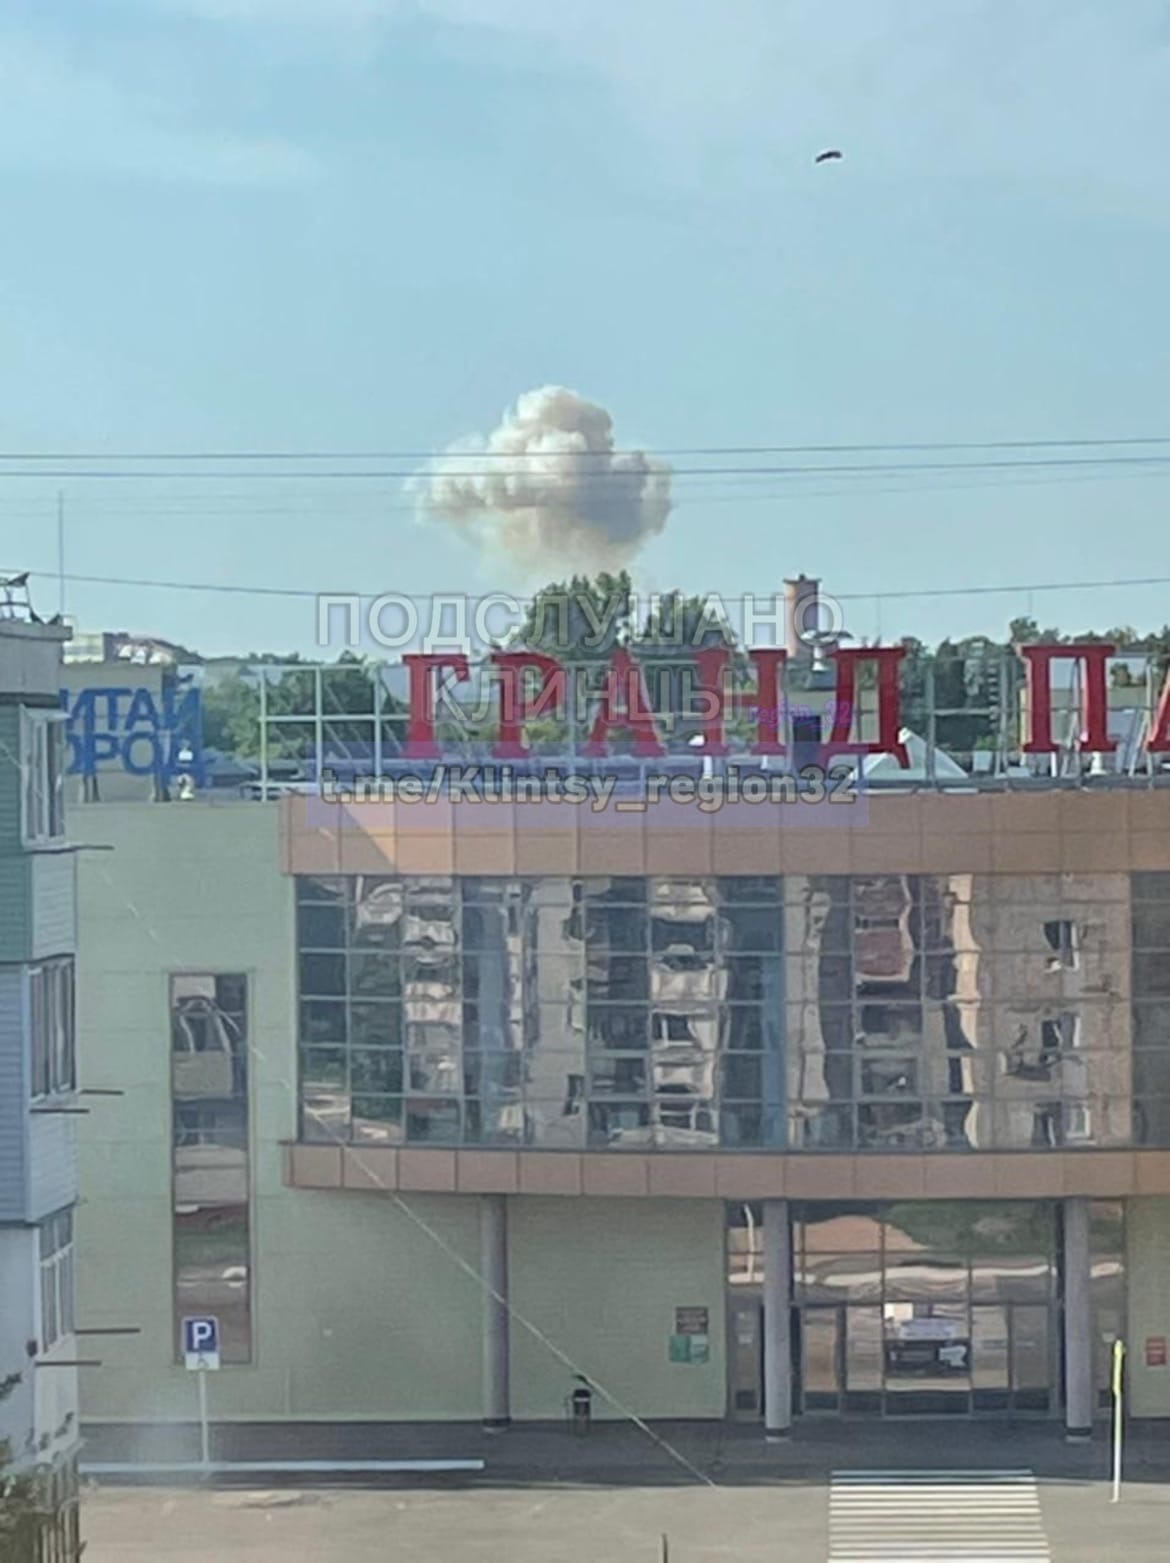 Сегодня утром в городе Клинцы Брянской области прогремел взрыв